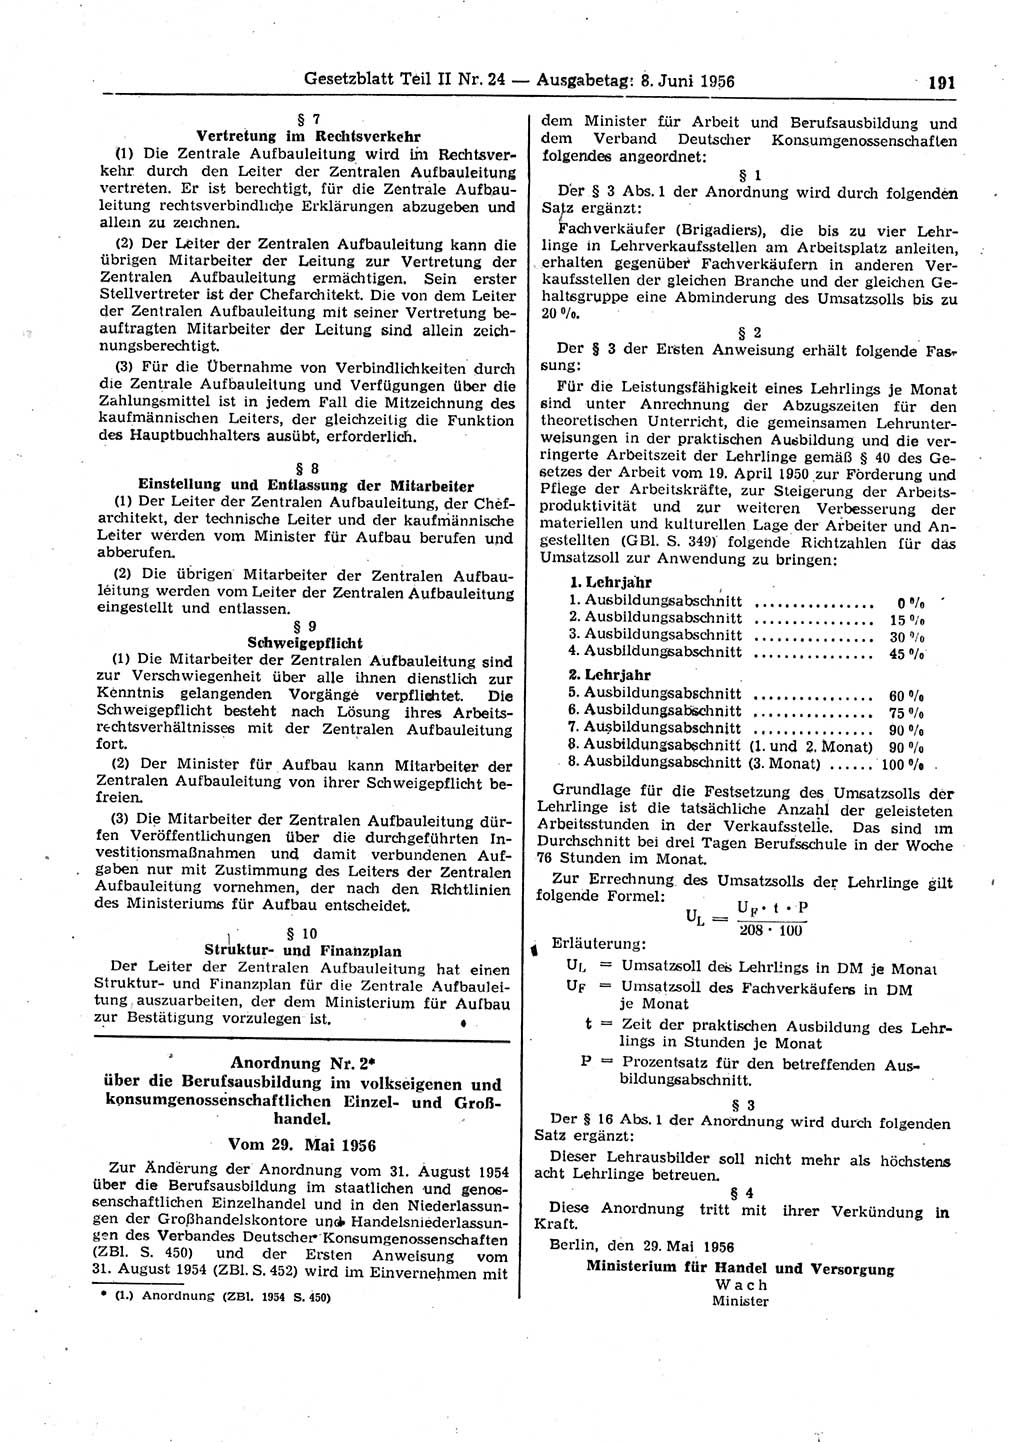 Gesetzblatt (GBl.) der Deutschen Demokratischen Republik (DDR) Teil ⅠⅠ 1956, Seite 191 (GBl. DDR ⅠⅠ 1956, S. 191)